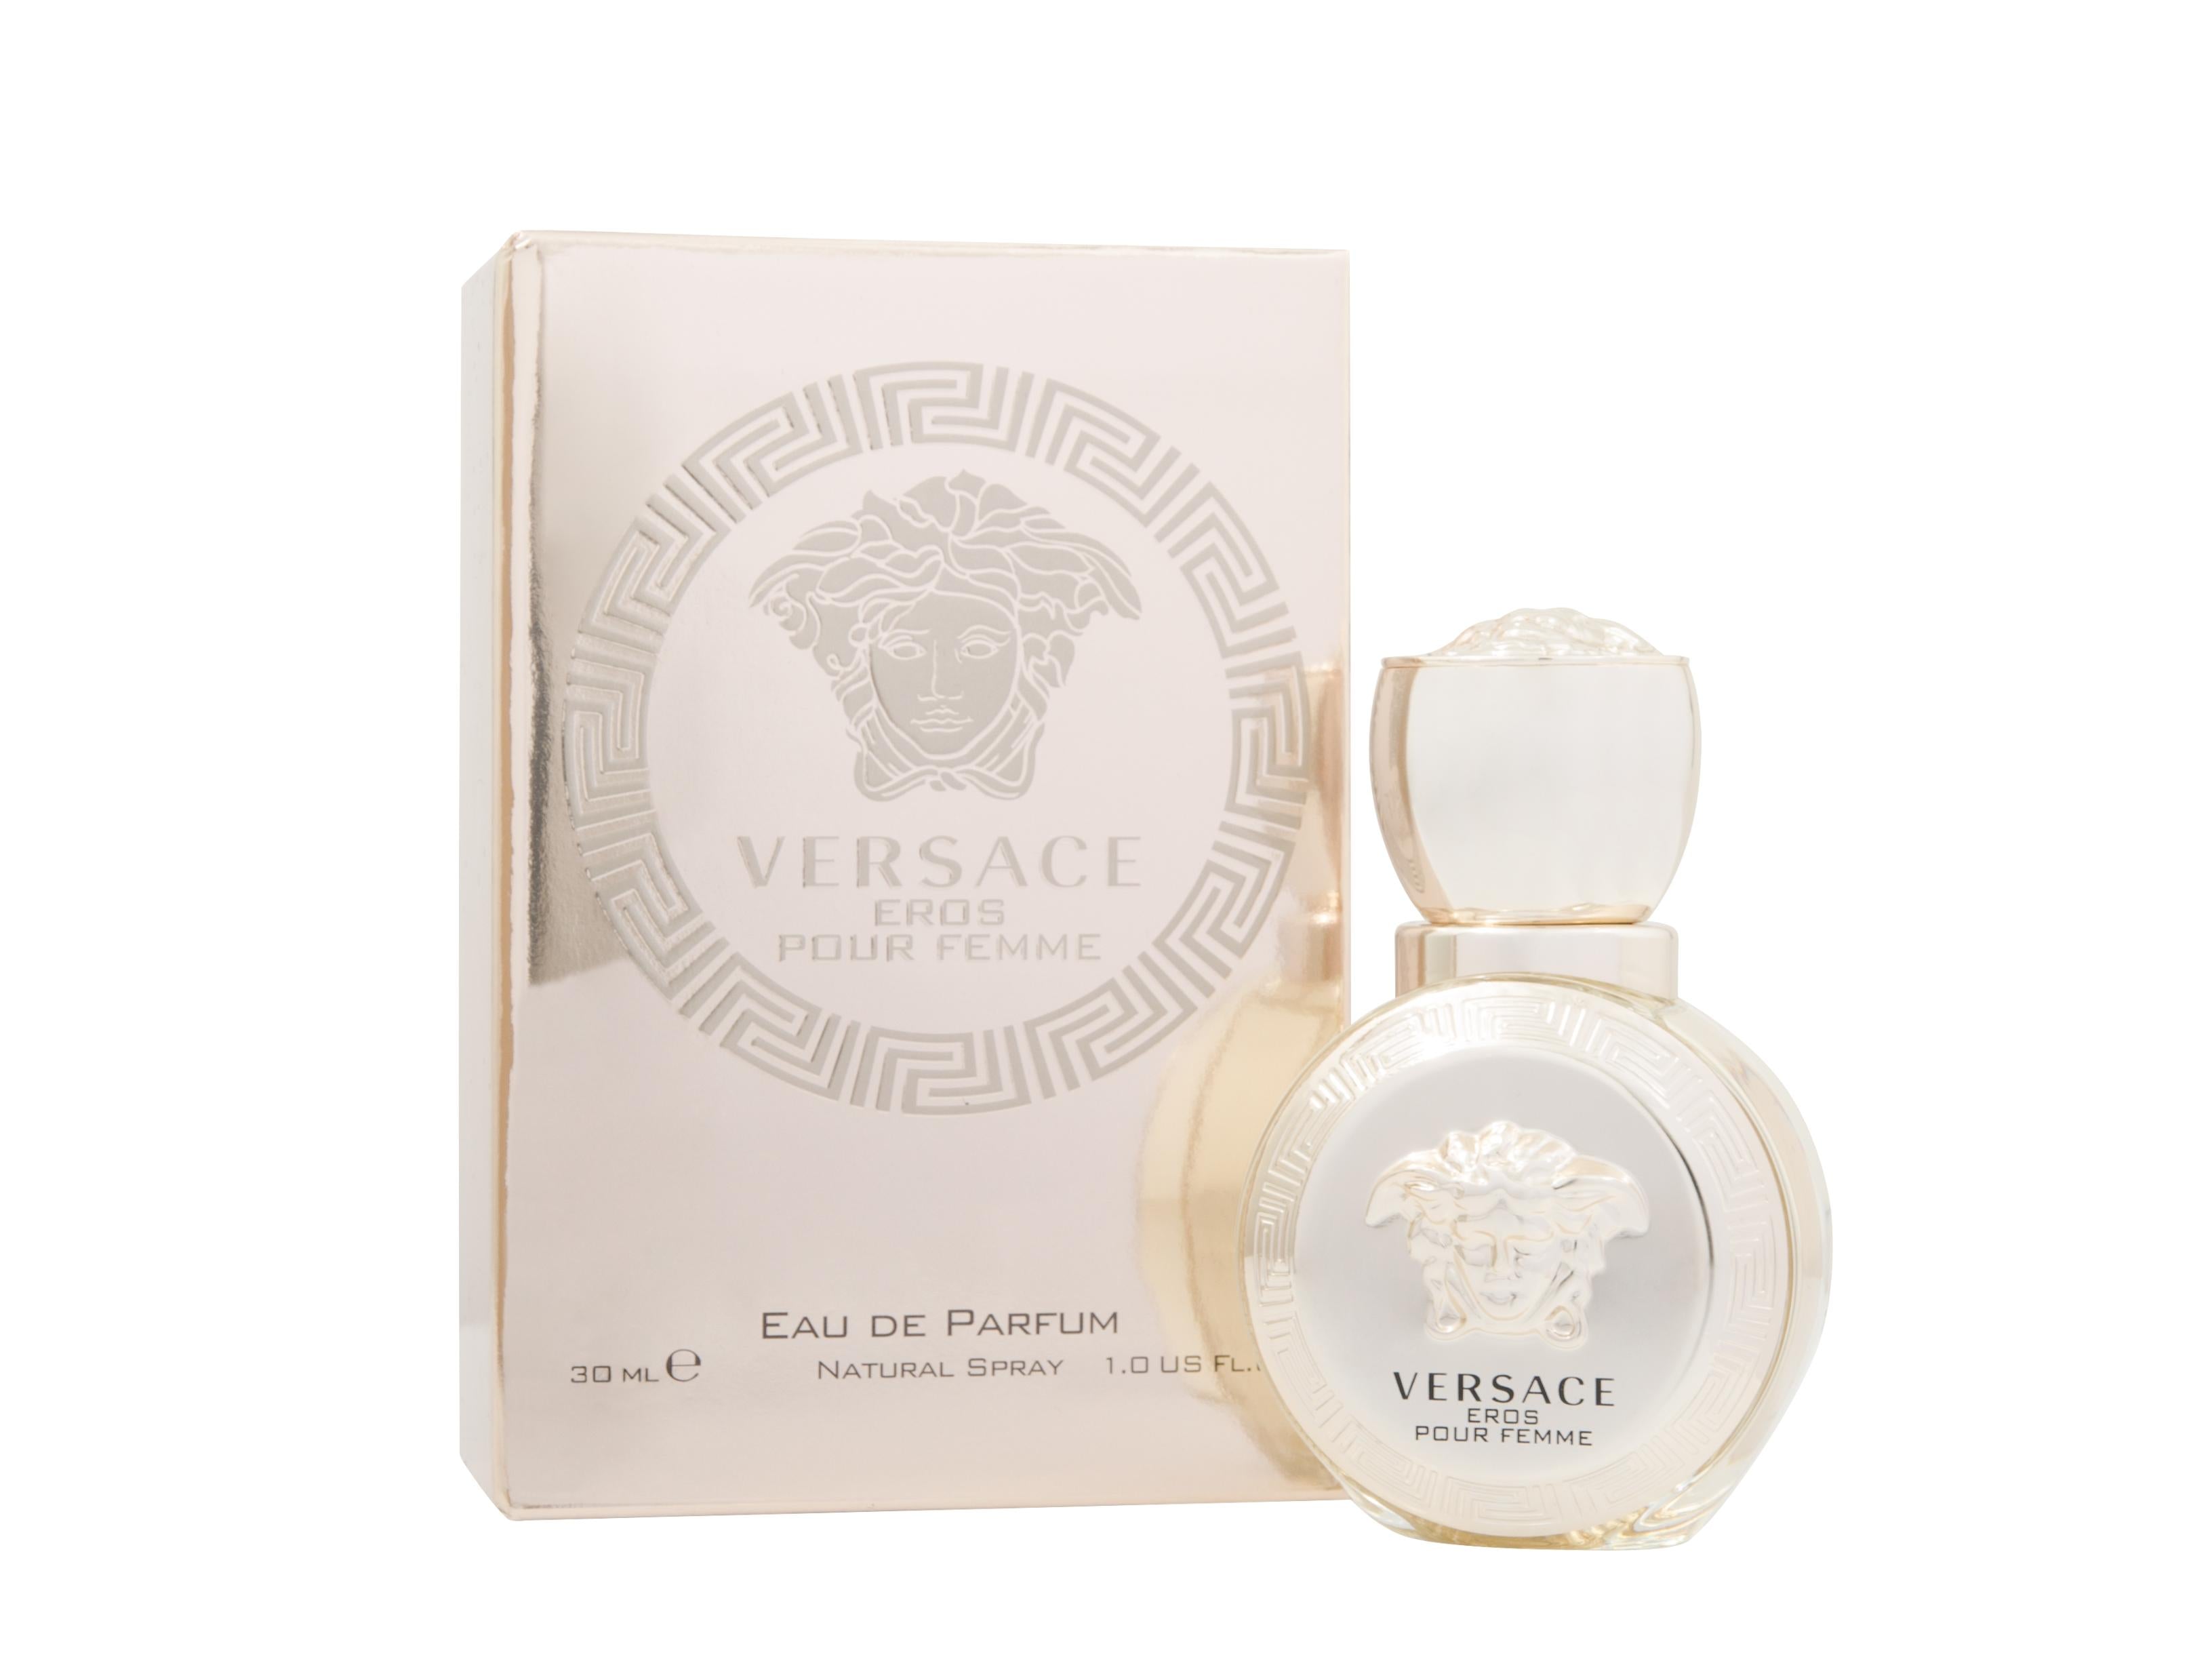 View Versace Eros Pour Femme Eau de Parfum 30ml Spray information